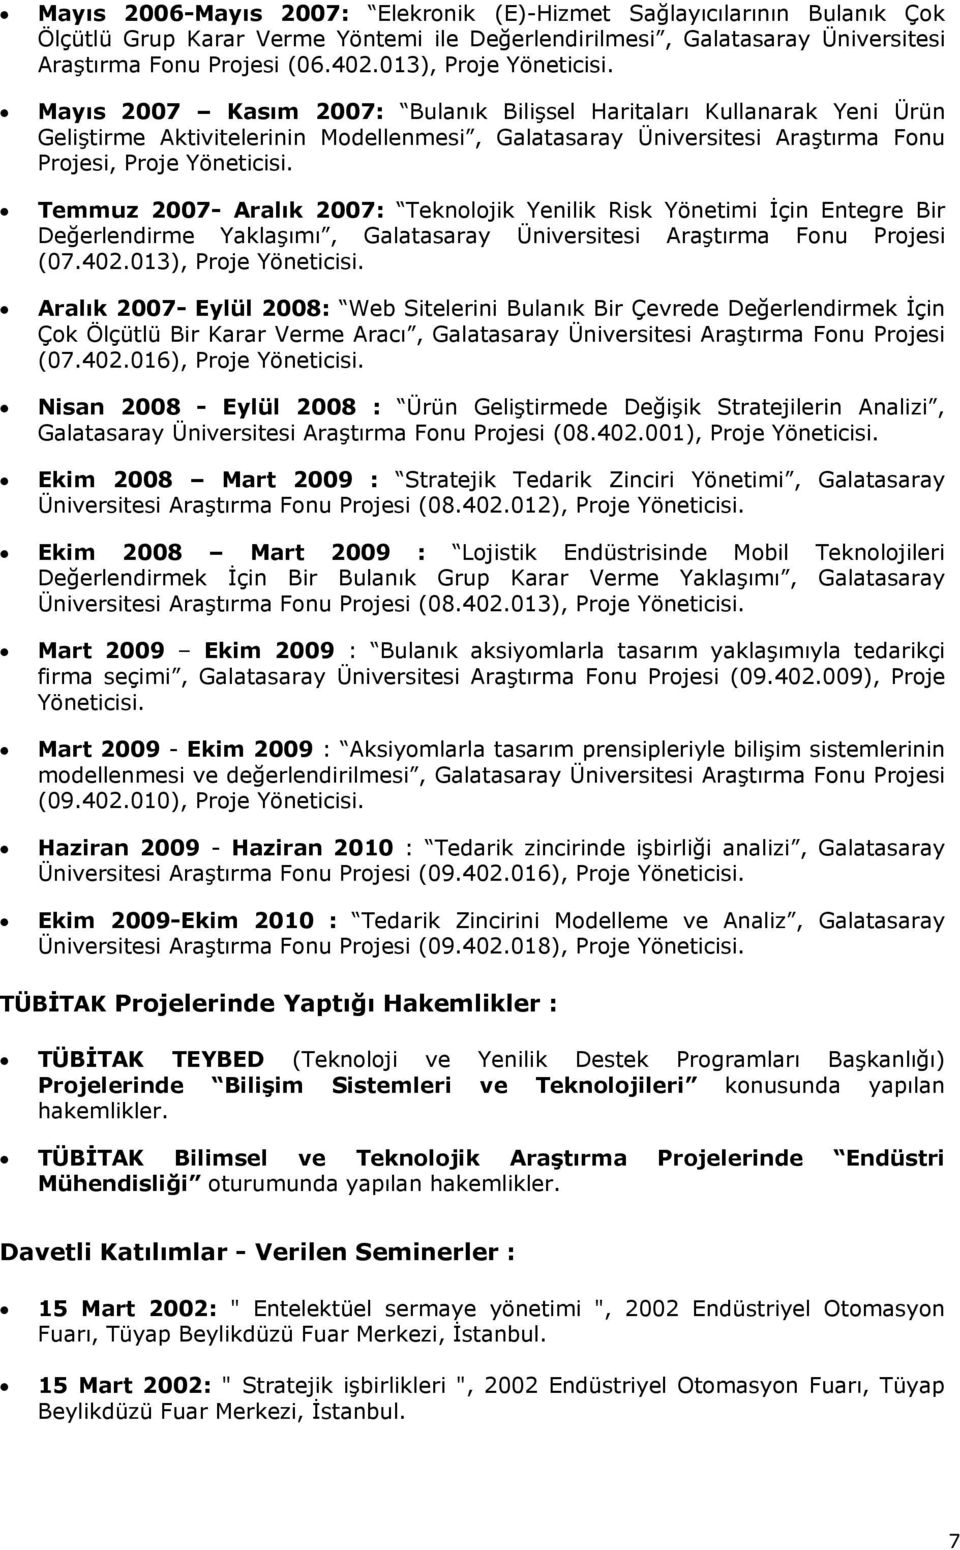 Mayıs 2007 Kasım 2007: Bulanık Bilişsel Haritaları Kullanarak Yeni Ürün Geliştirme Aktivitelerinin Modellenmesi, Galatasaray Üniversitesi Araştırma Fonu Projesi, Proje Yöneticisi.